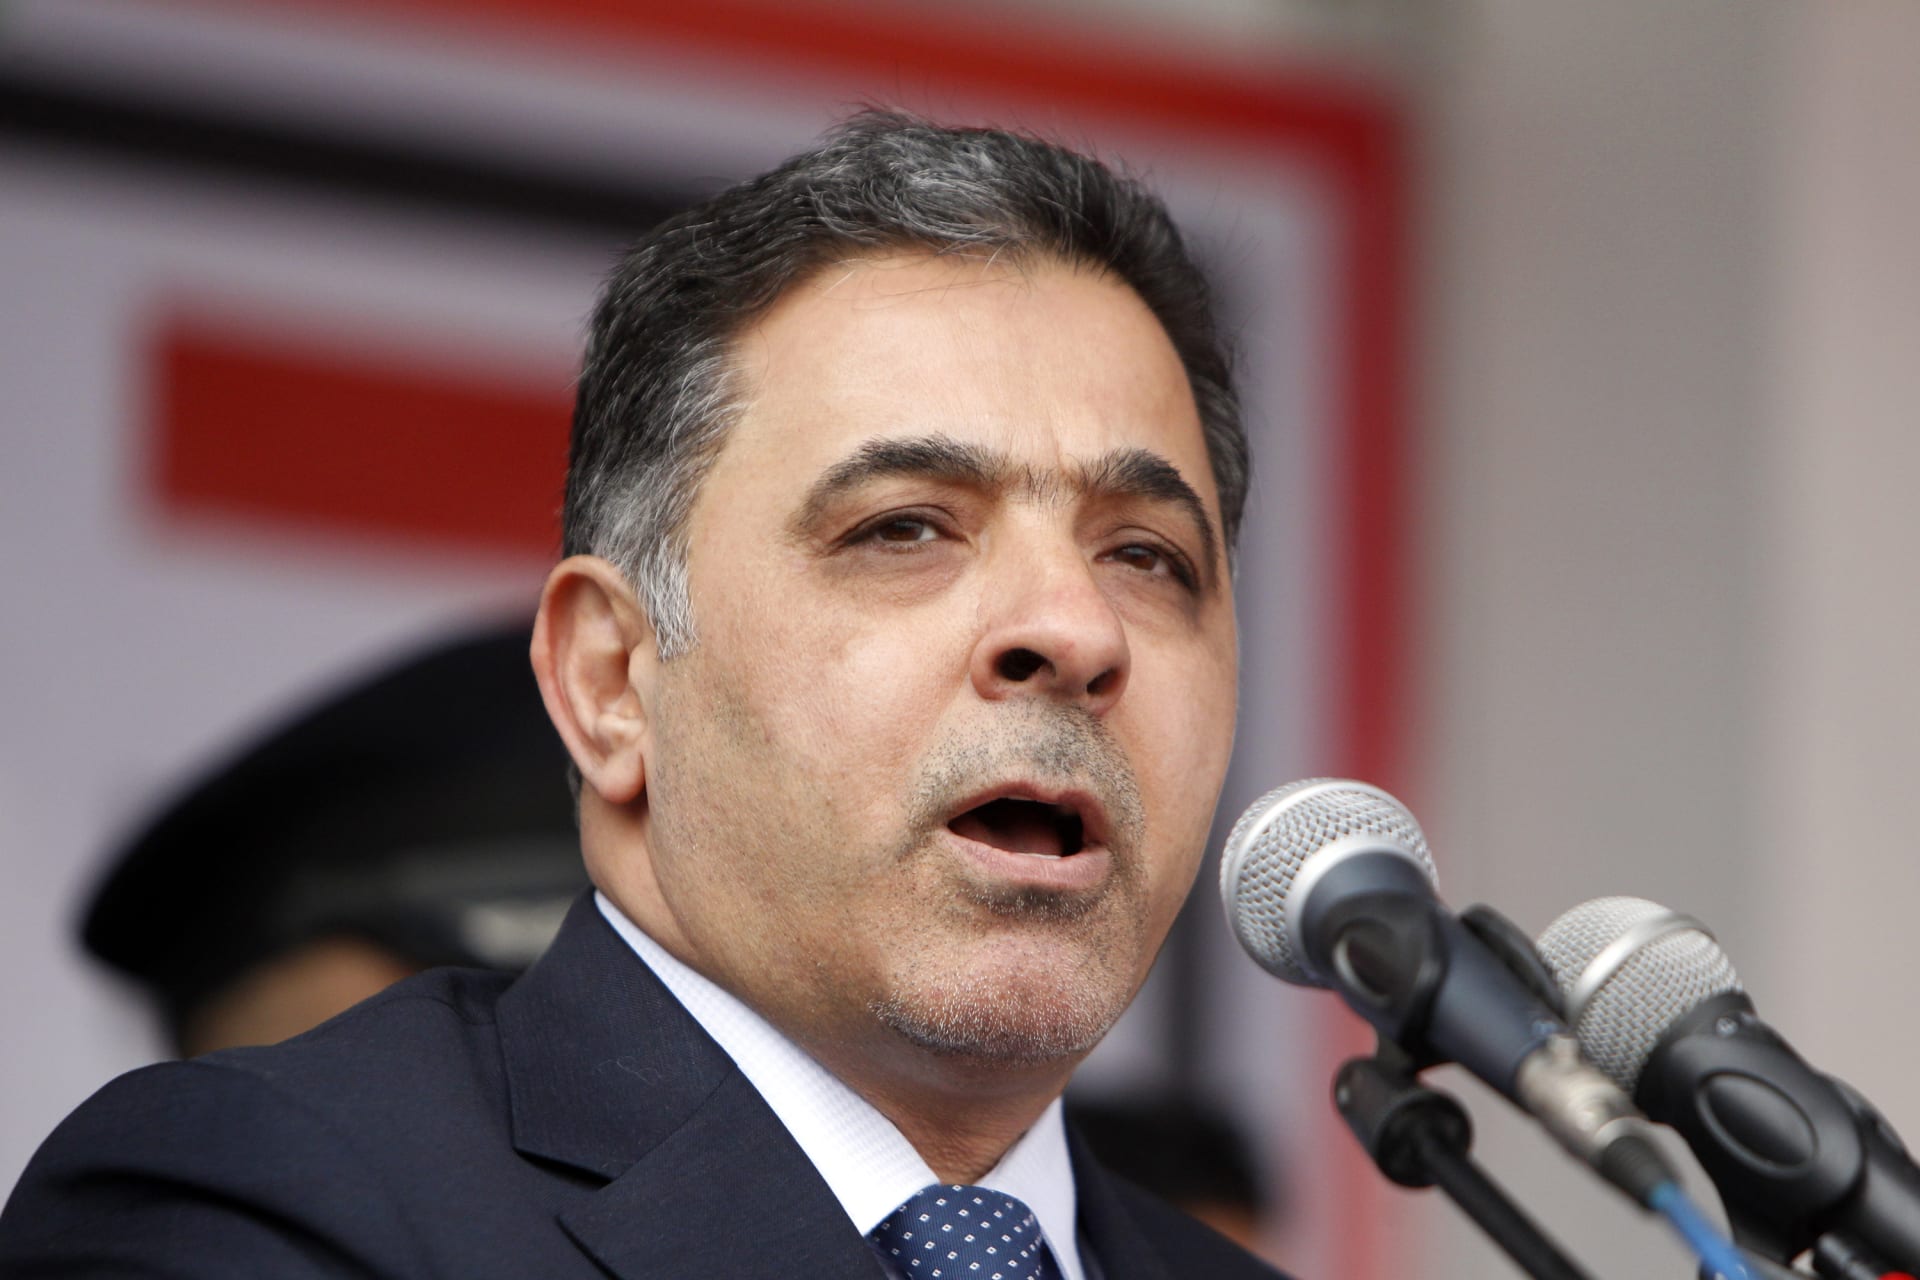 وزير الداخلية العراقي ينسحب من مؤتمر وزراء الداخلية العرب: نحتجّ على منهجية الإملاء وجّر الآخرين إلى مواقف سياسية تخدم مصالح البعض 